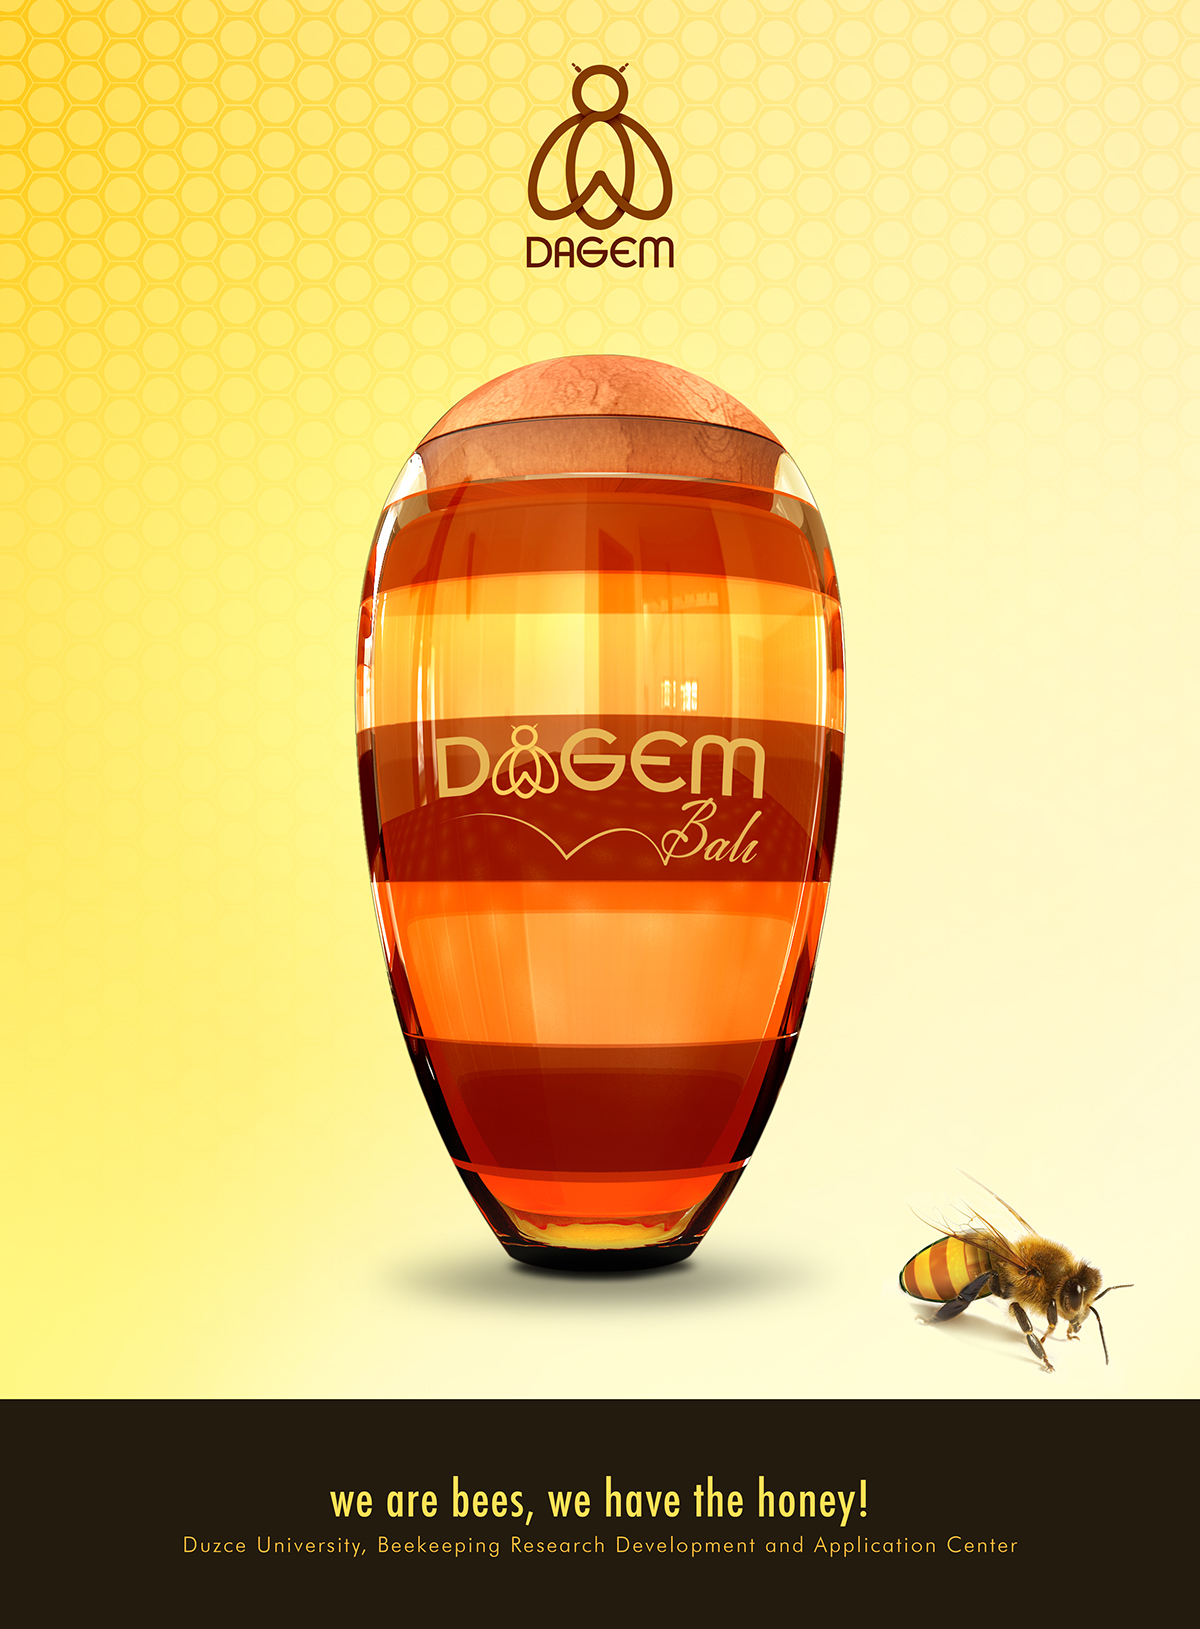 honey Dagem Honey jar jar bee düzce üniversitesi yığılca yığılca arısı yigilca bee Honey jar